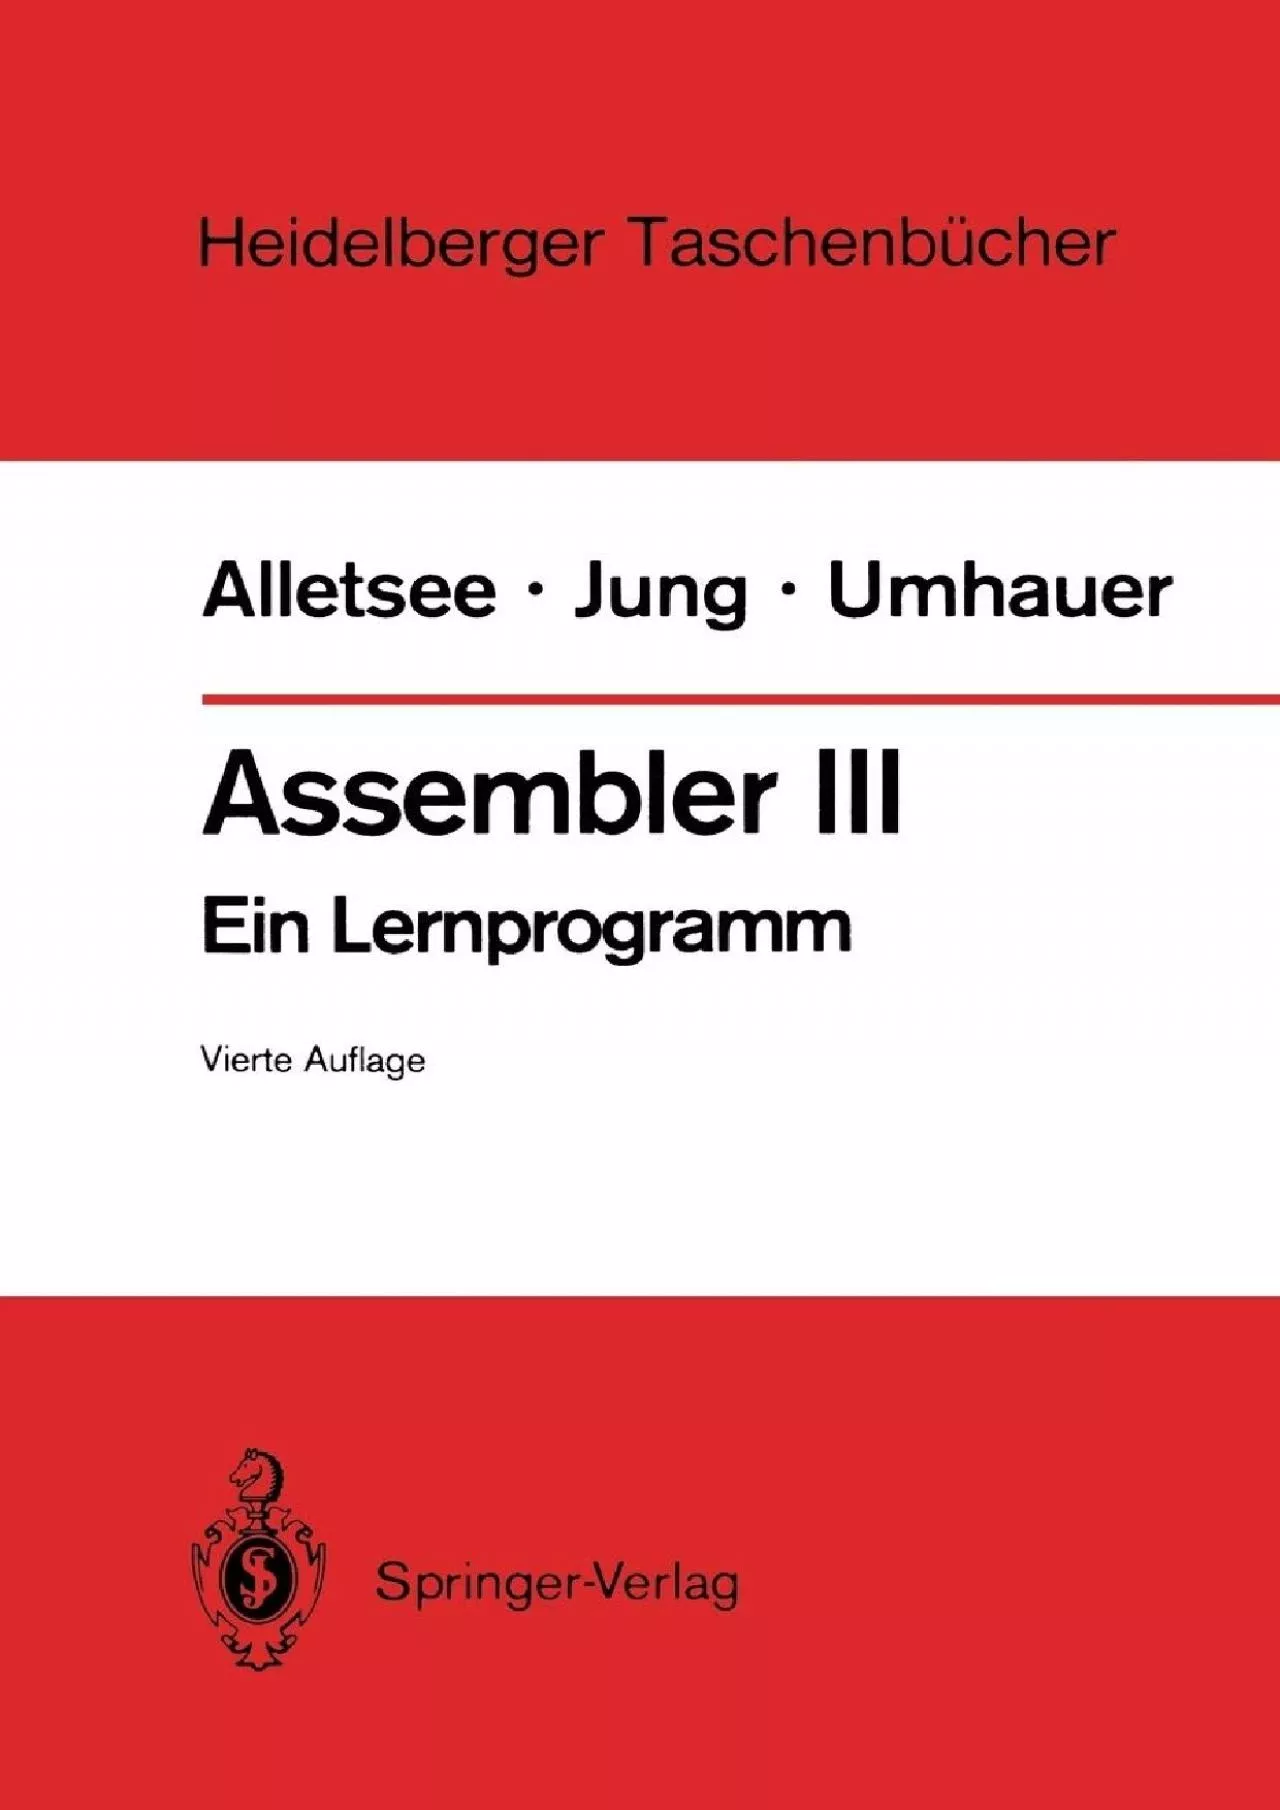 [eBOOK]-Assembler III: Ein Lernprogramm (Heidelberger Taschenbücher, 142) (German Edition)